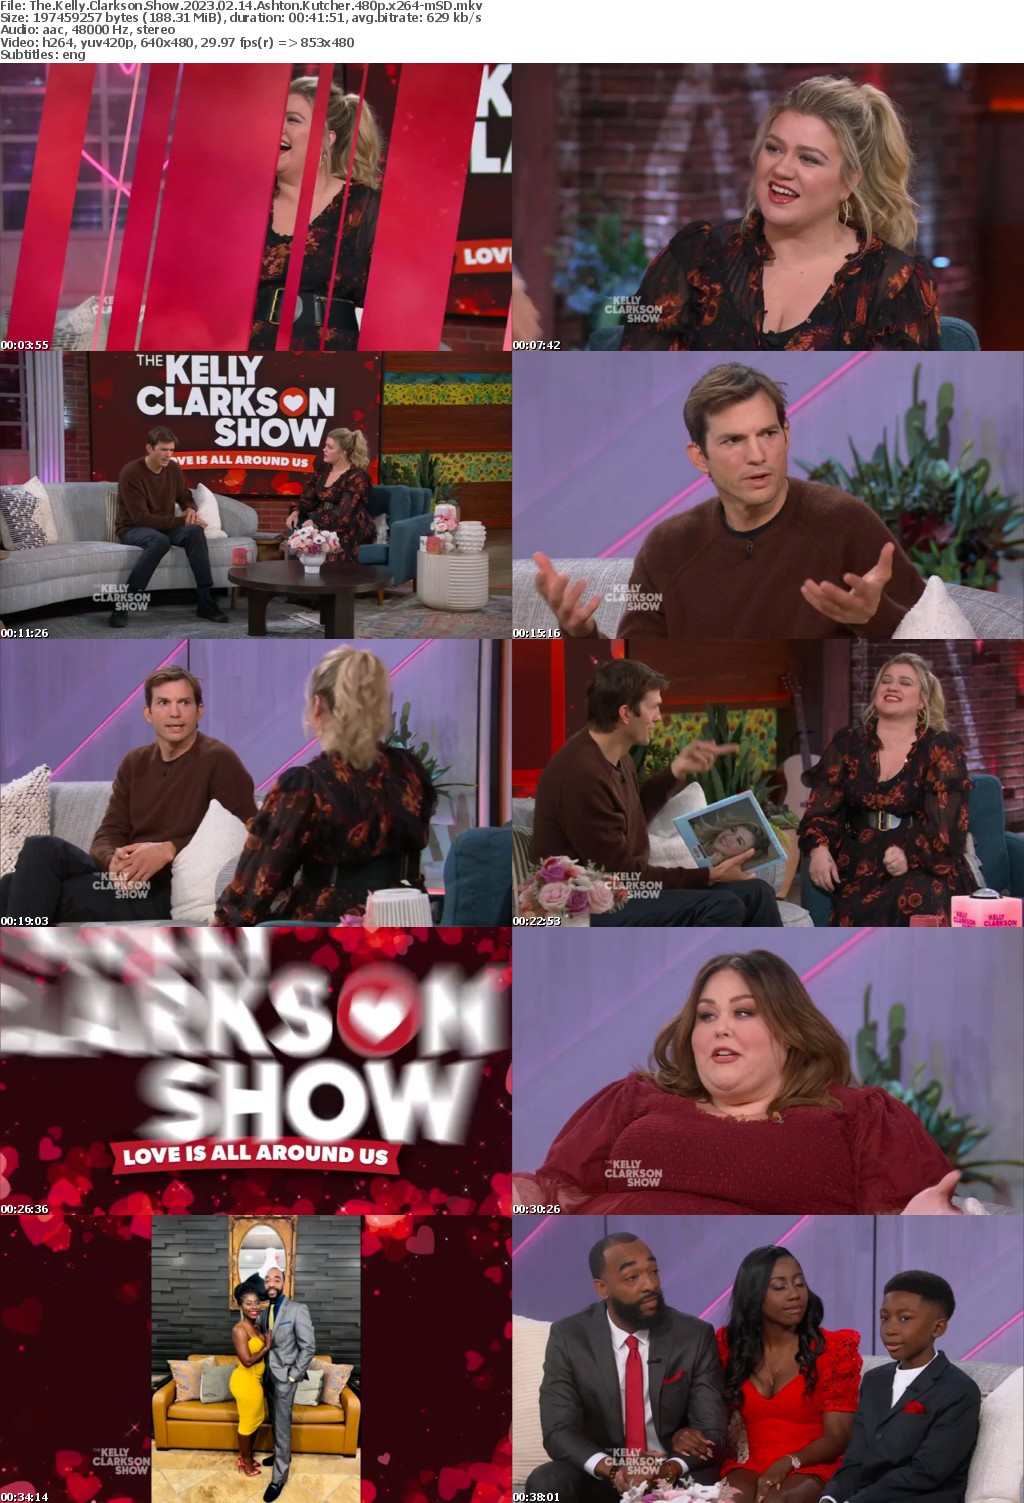 The Kelly Clarkson Show 2023 02 14 Ashton Kutcher 480p x264-mSD